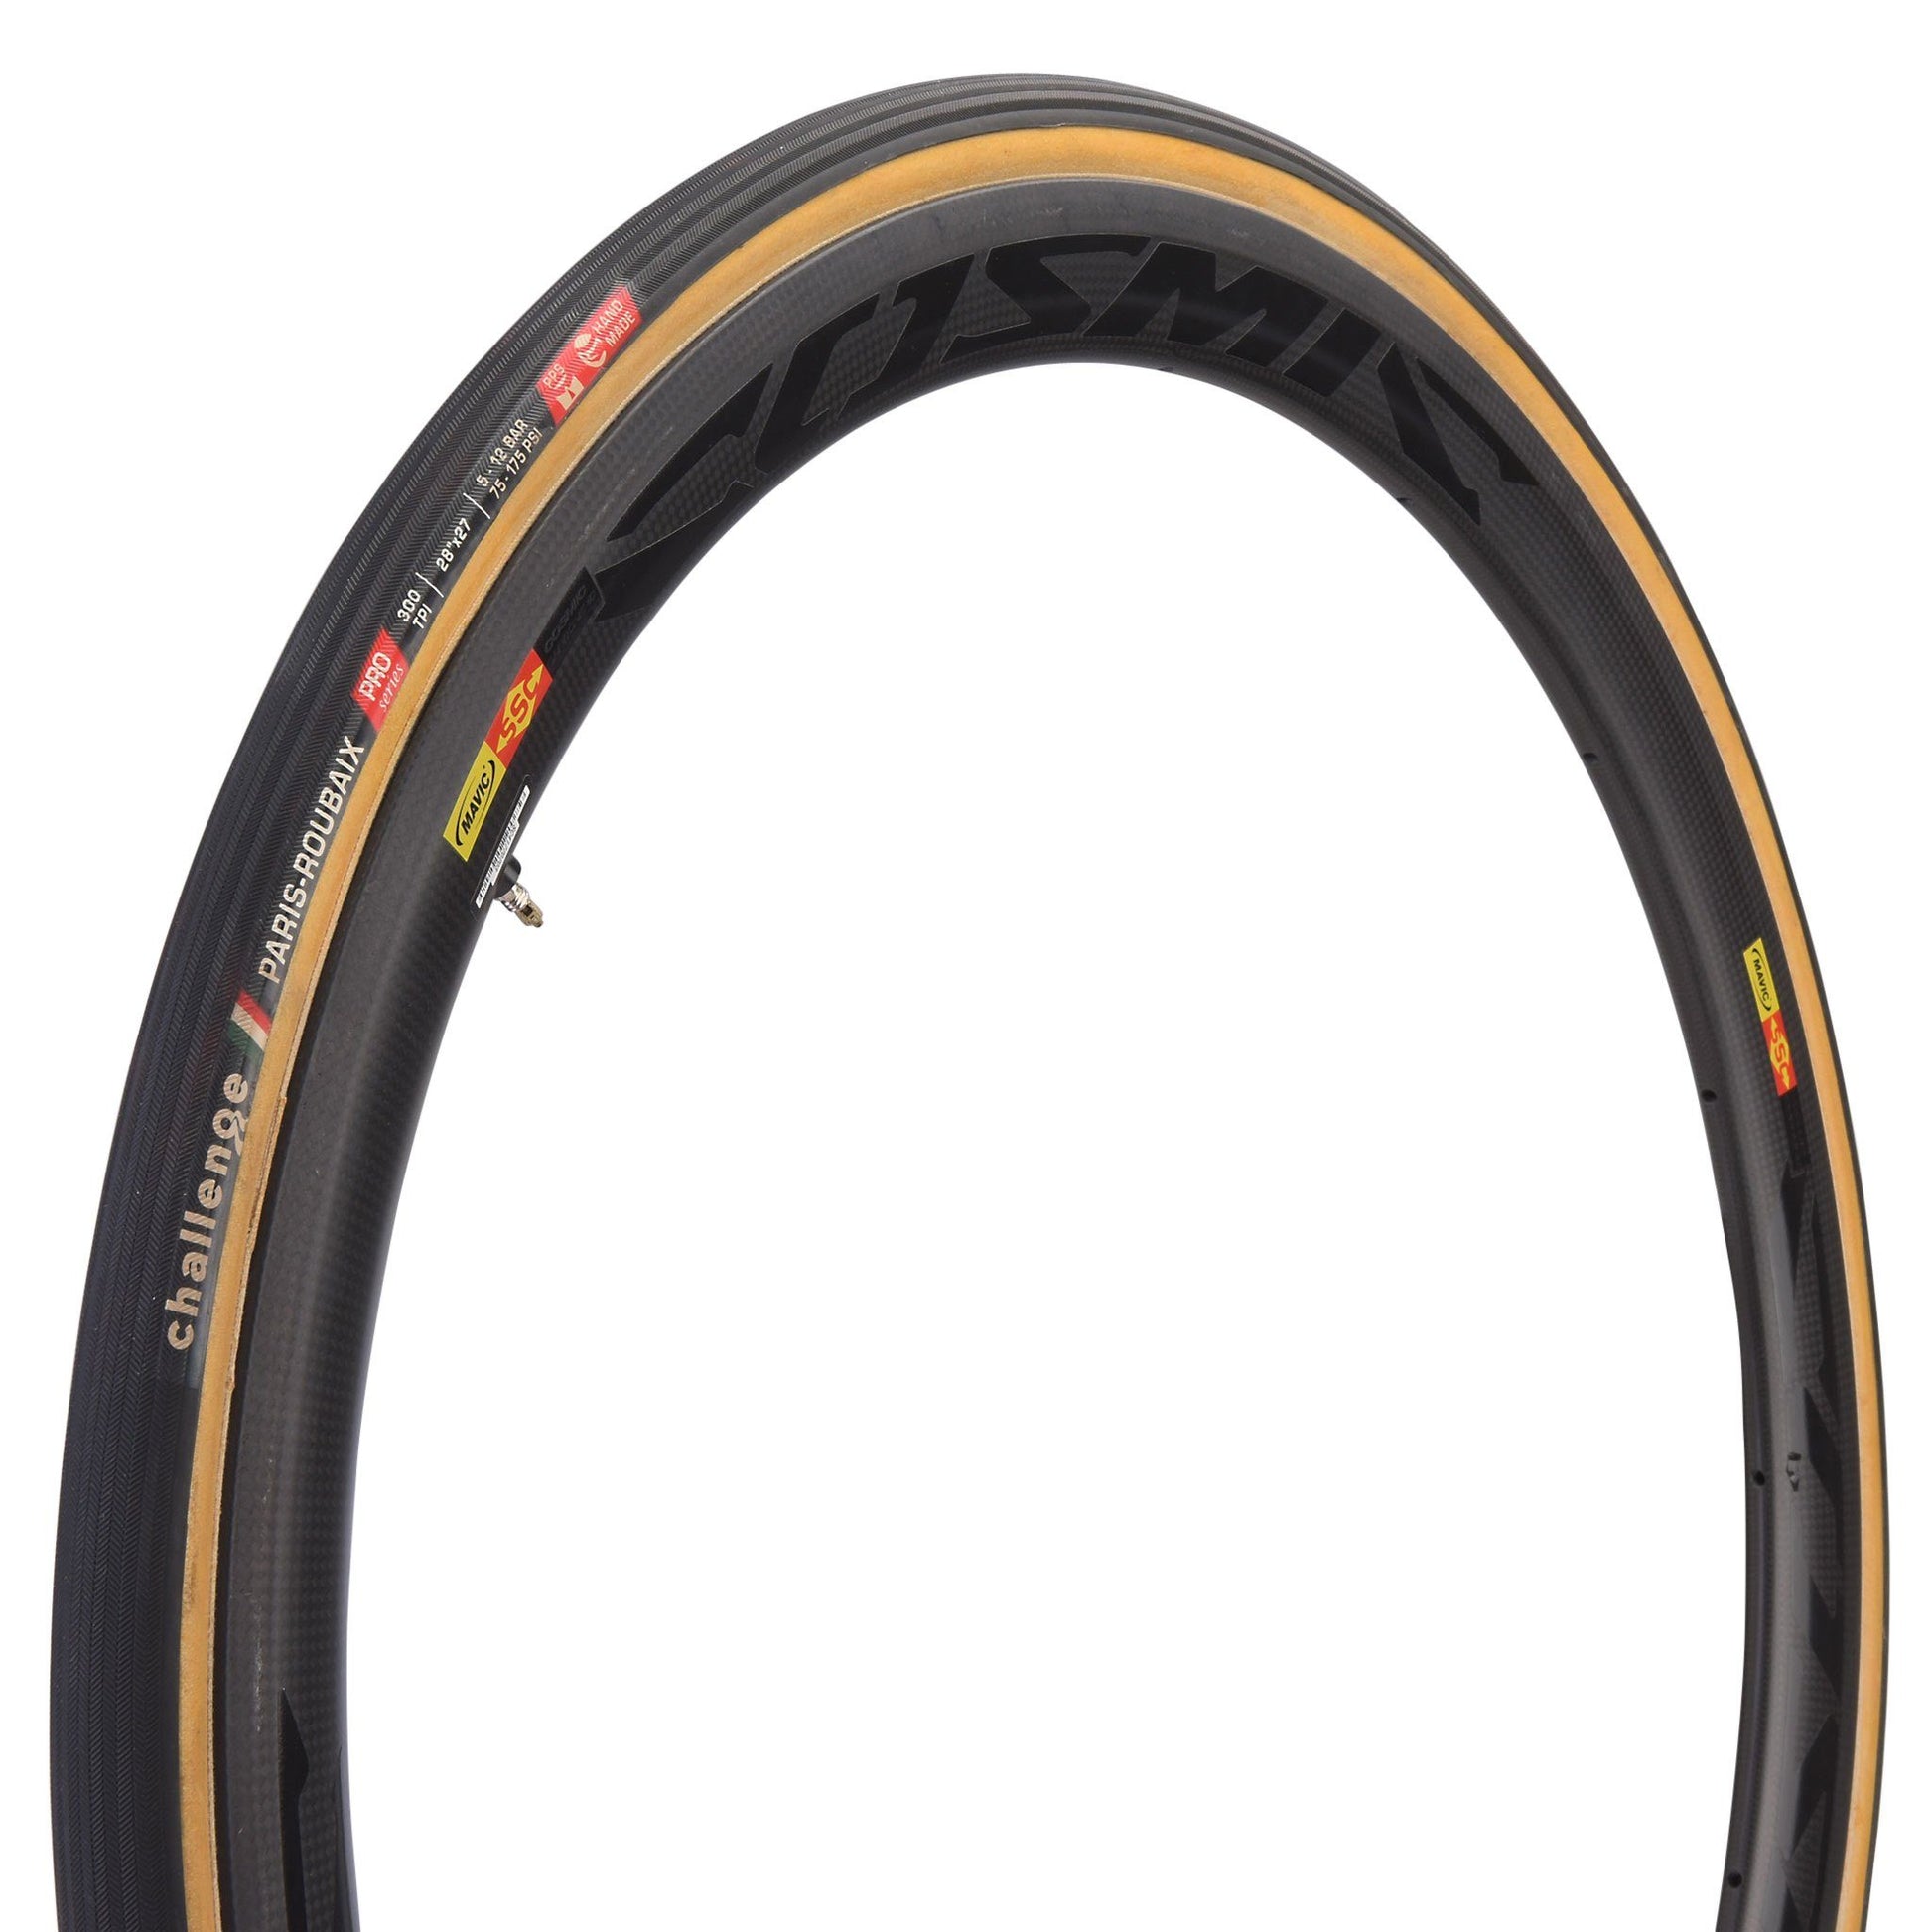 Paris-Roubaix Pro hose Tires - Tubulars Challenge 